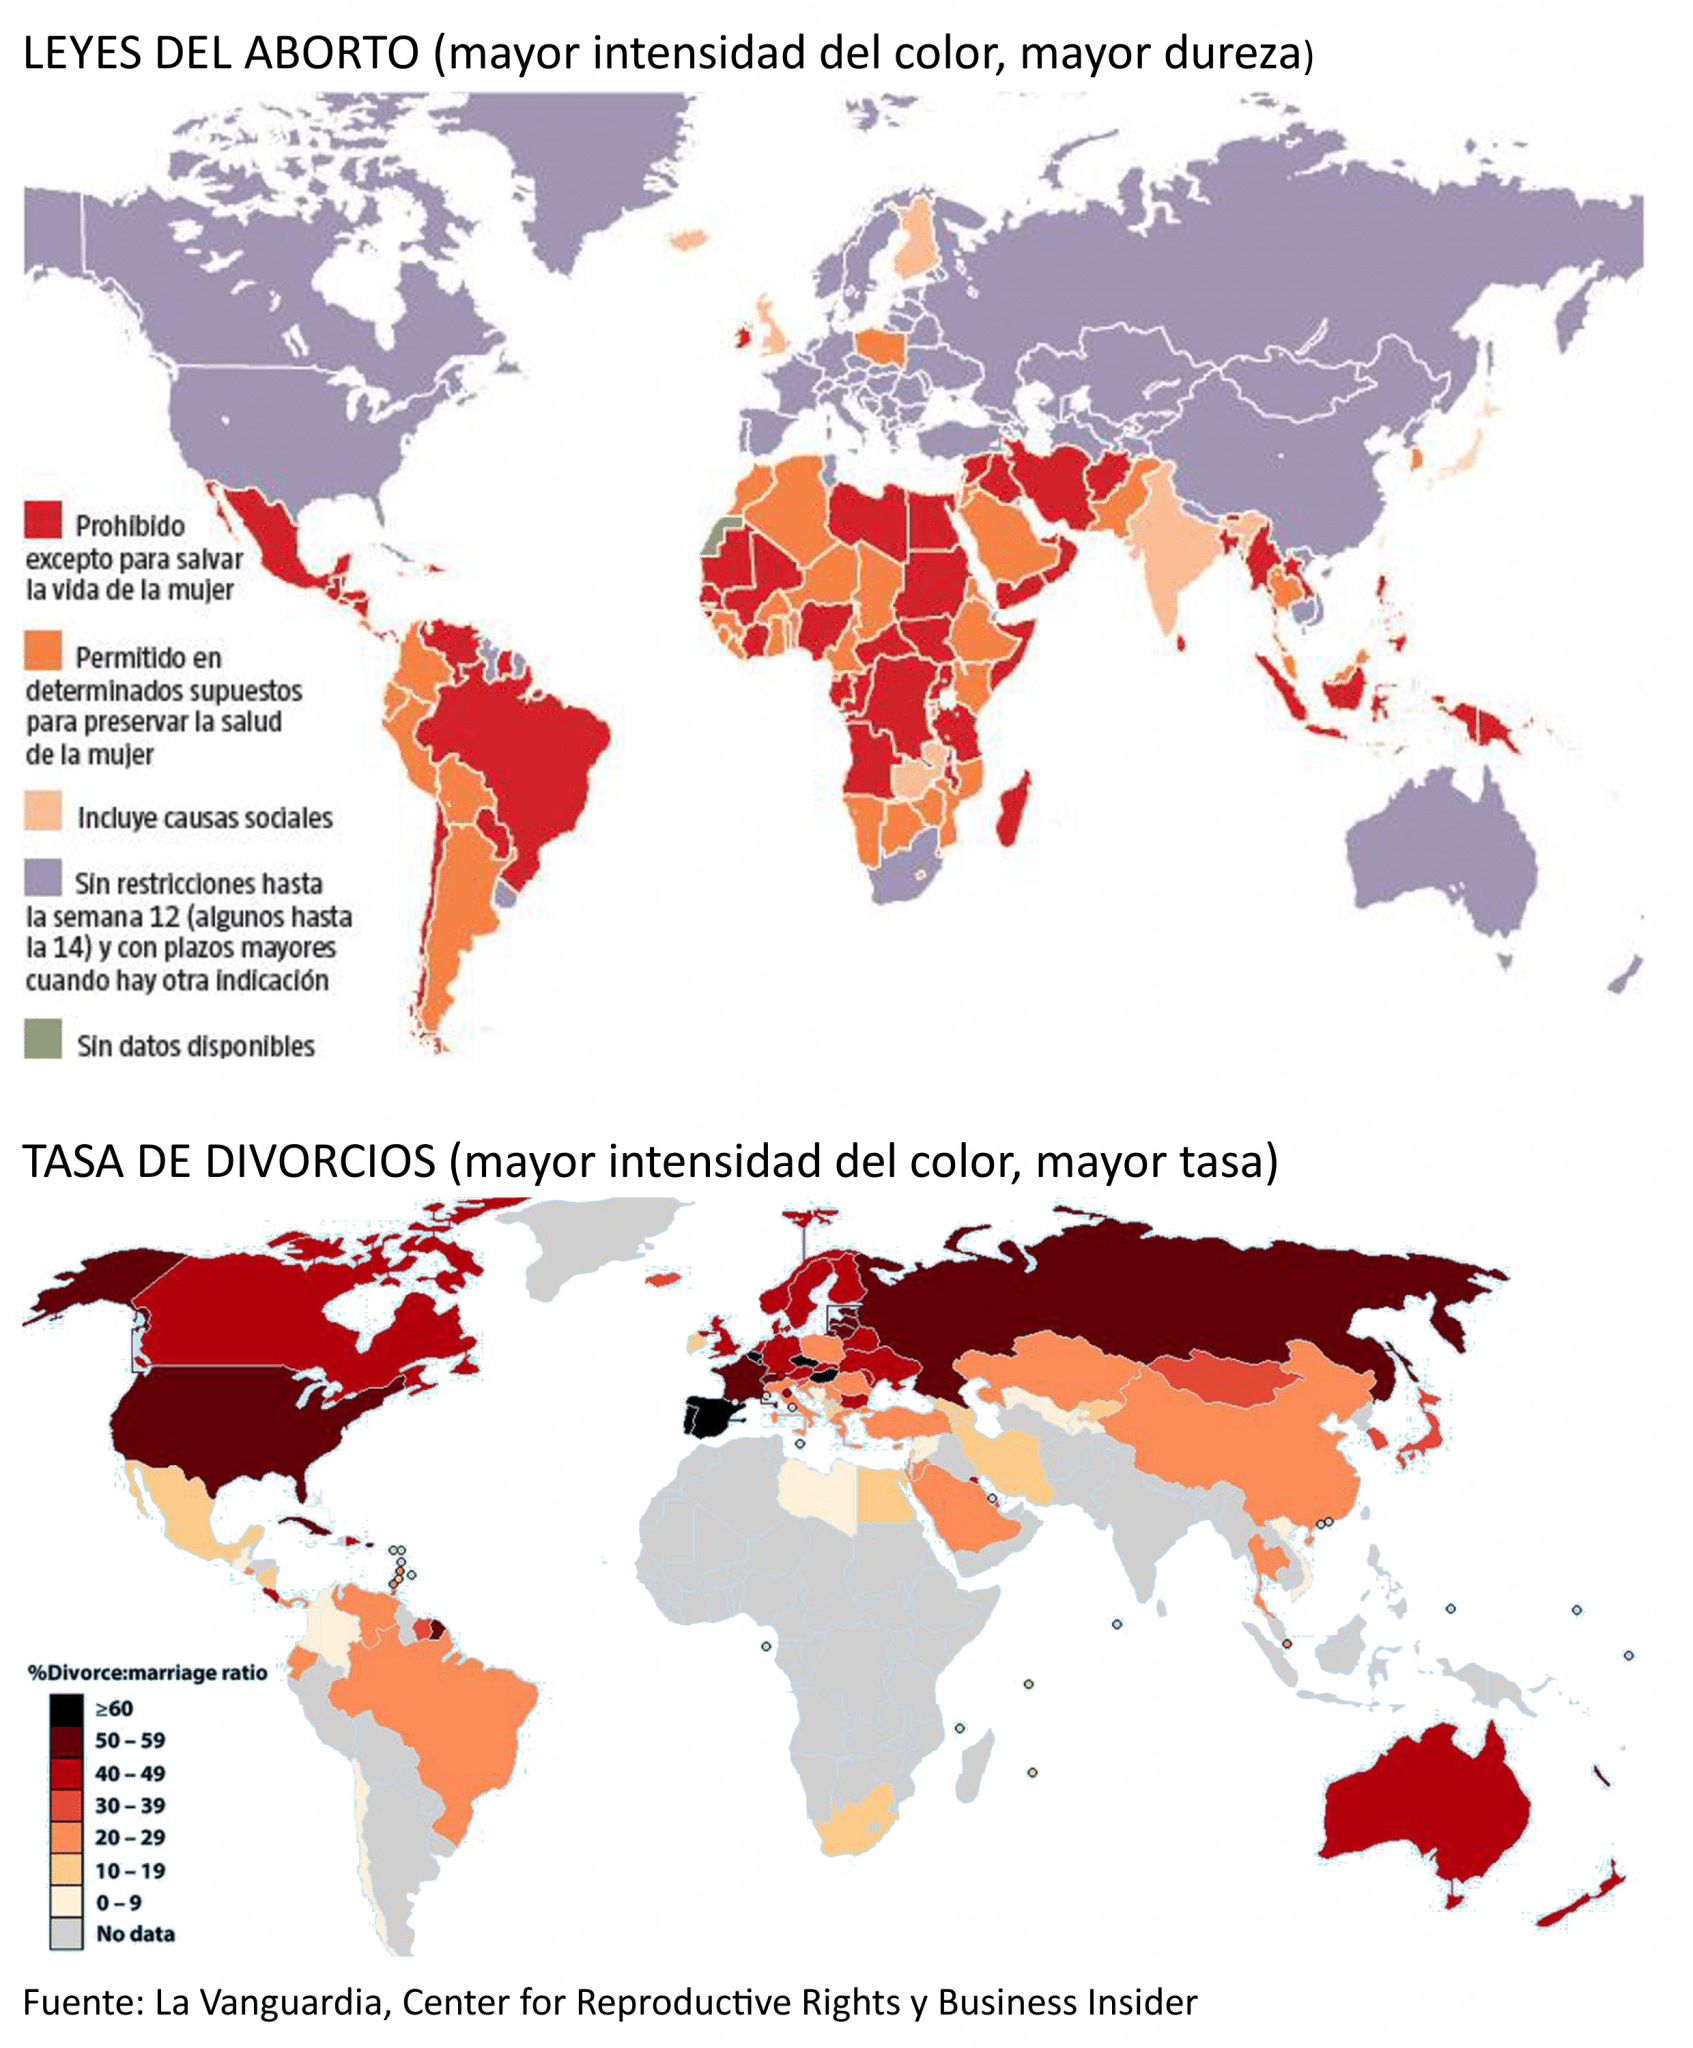 mapa-del-aborto-y-divorcio1.png